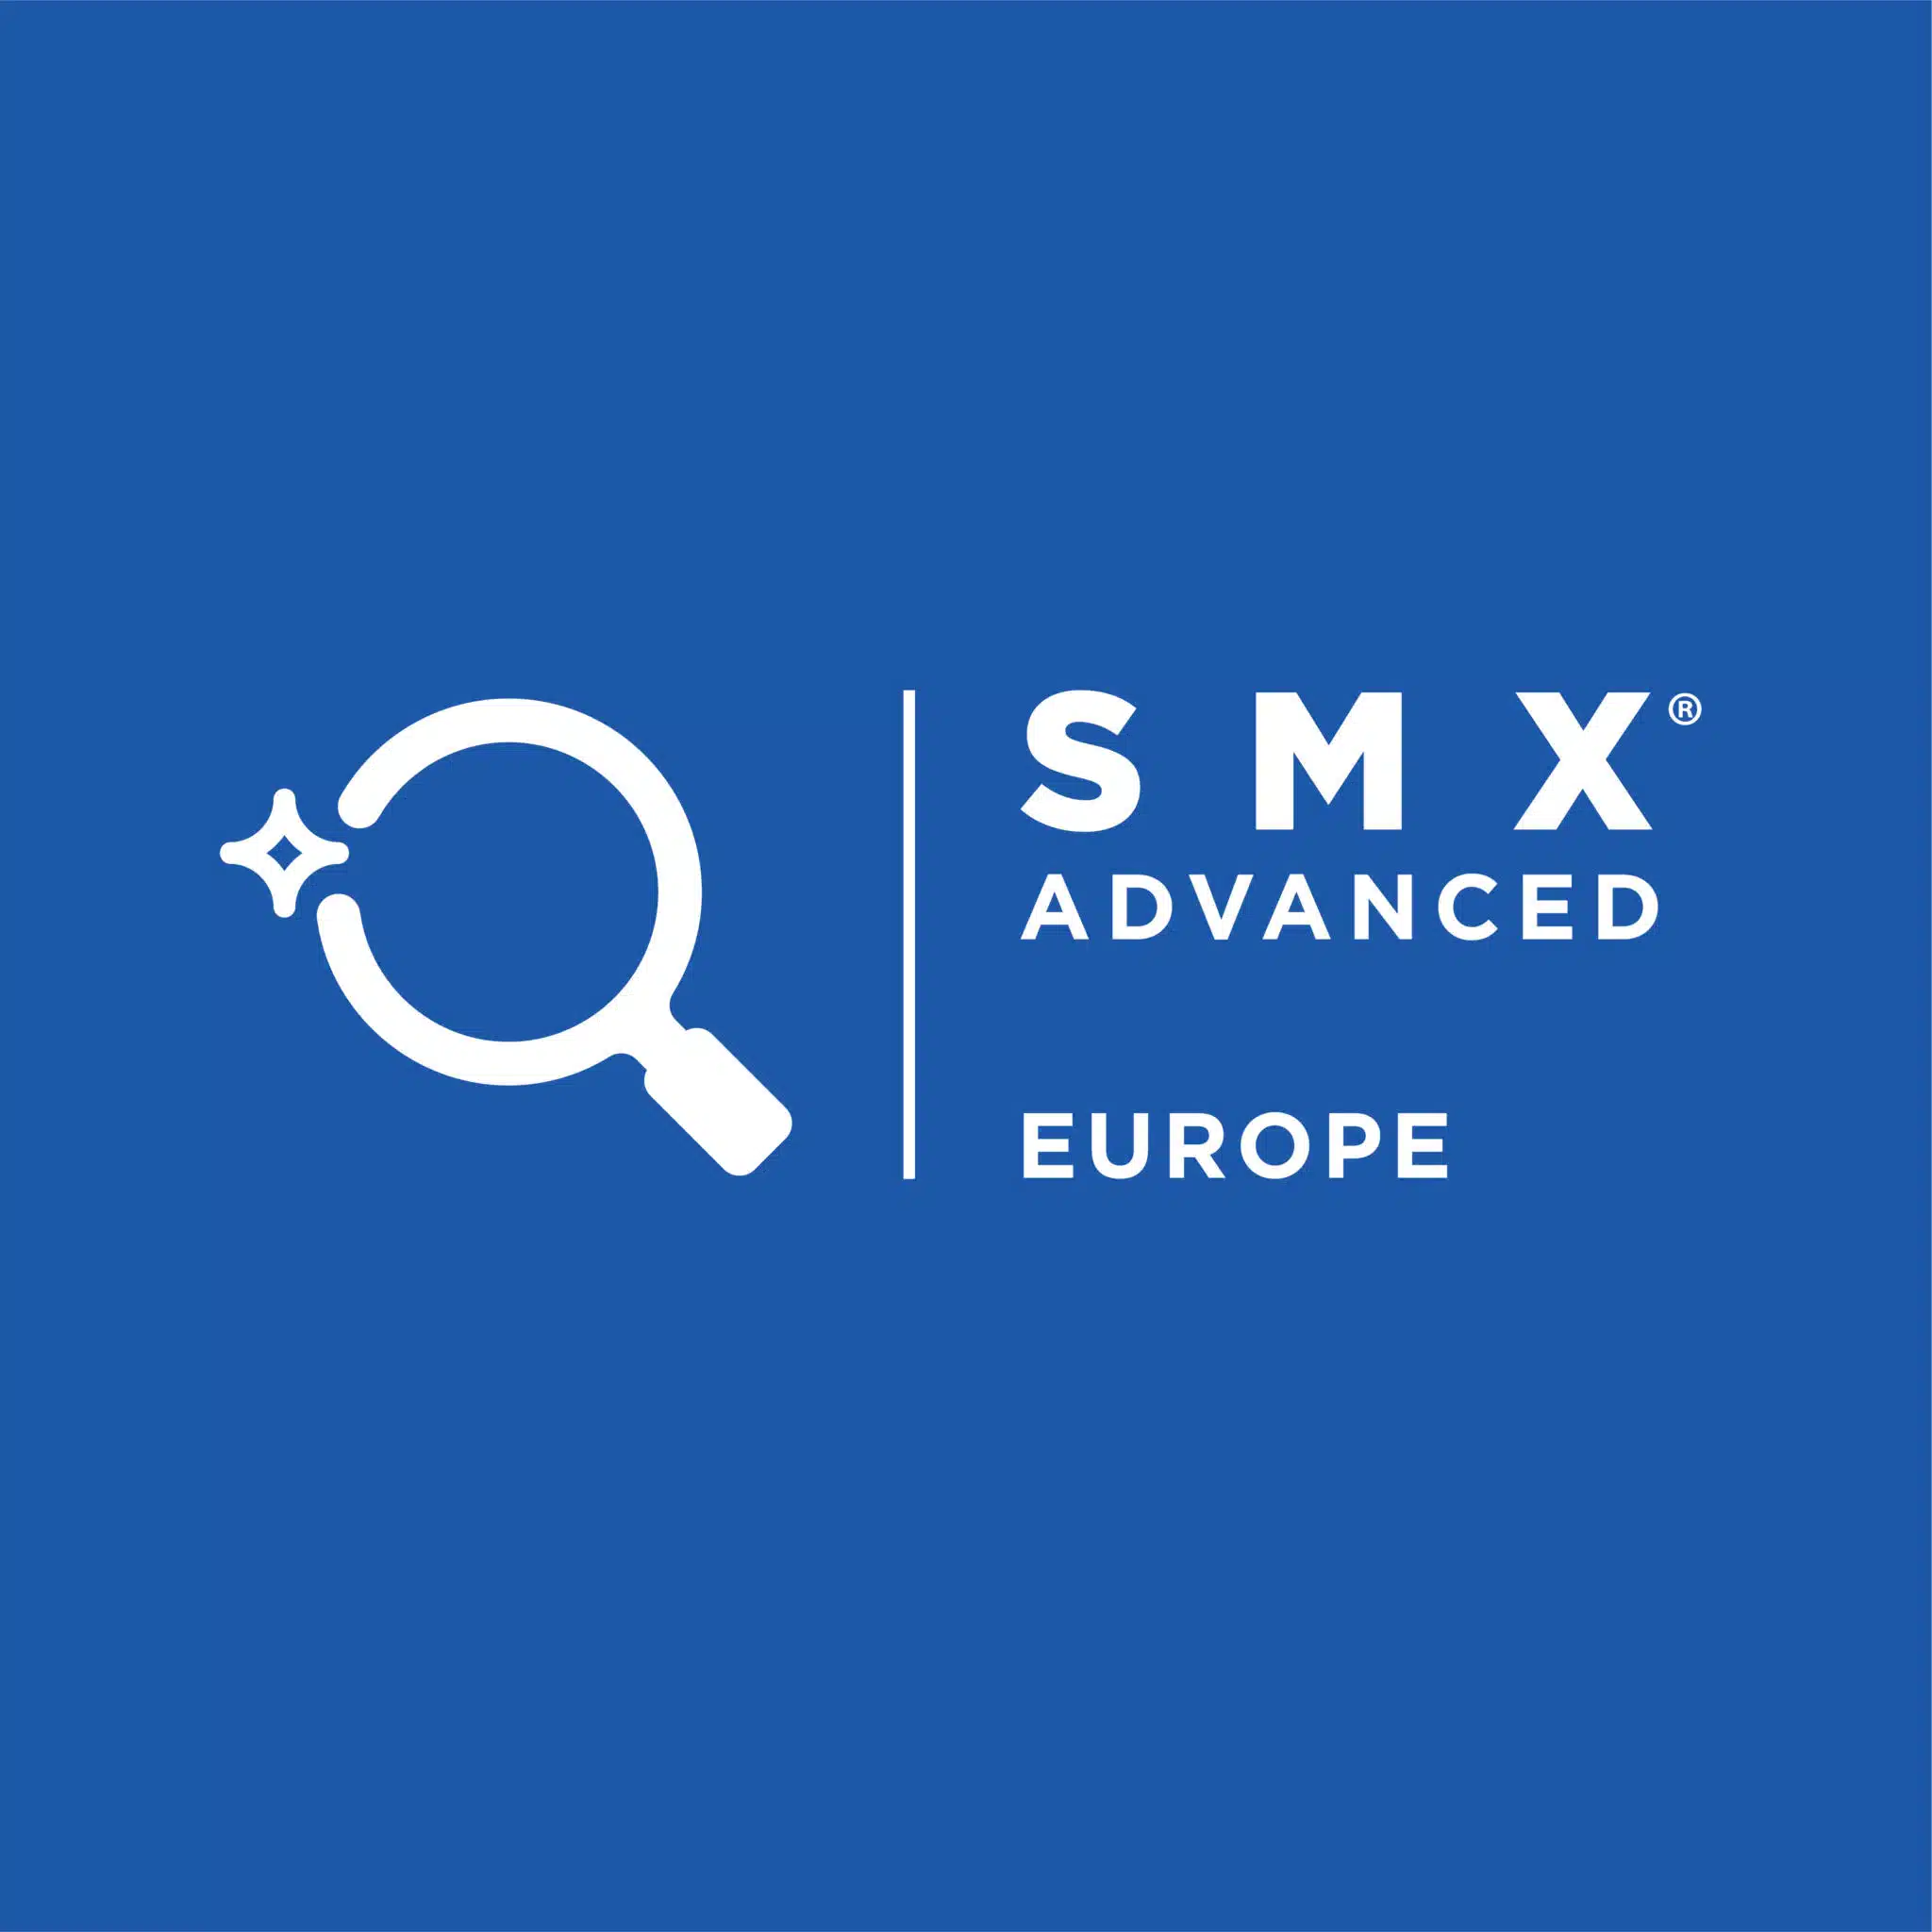 Komm zur SMX Advanced Europe im September nach Berlin – 15% sparen mit dem Rabattcode SEARCHONESMXADV22